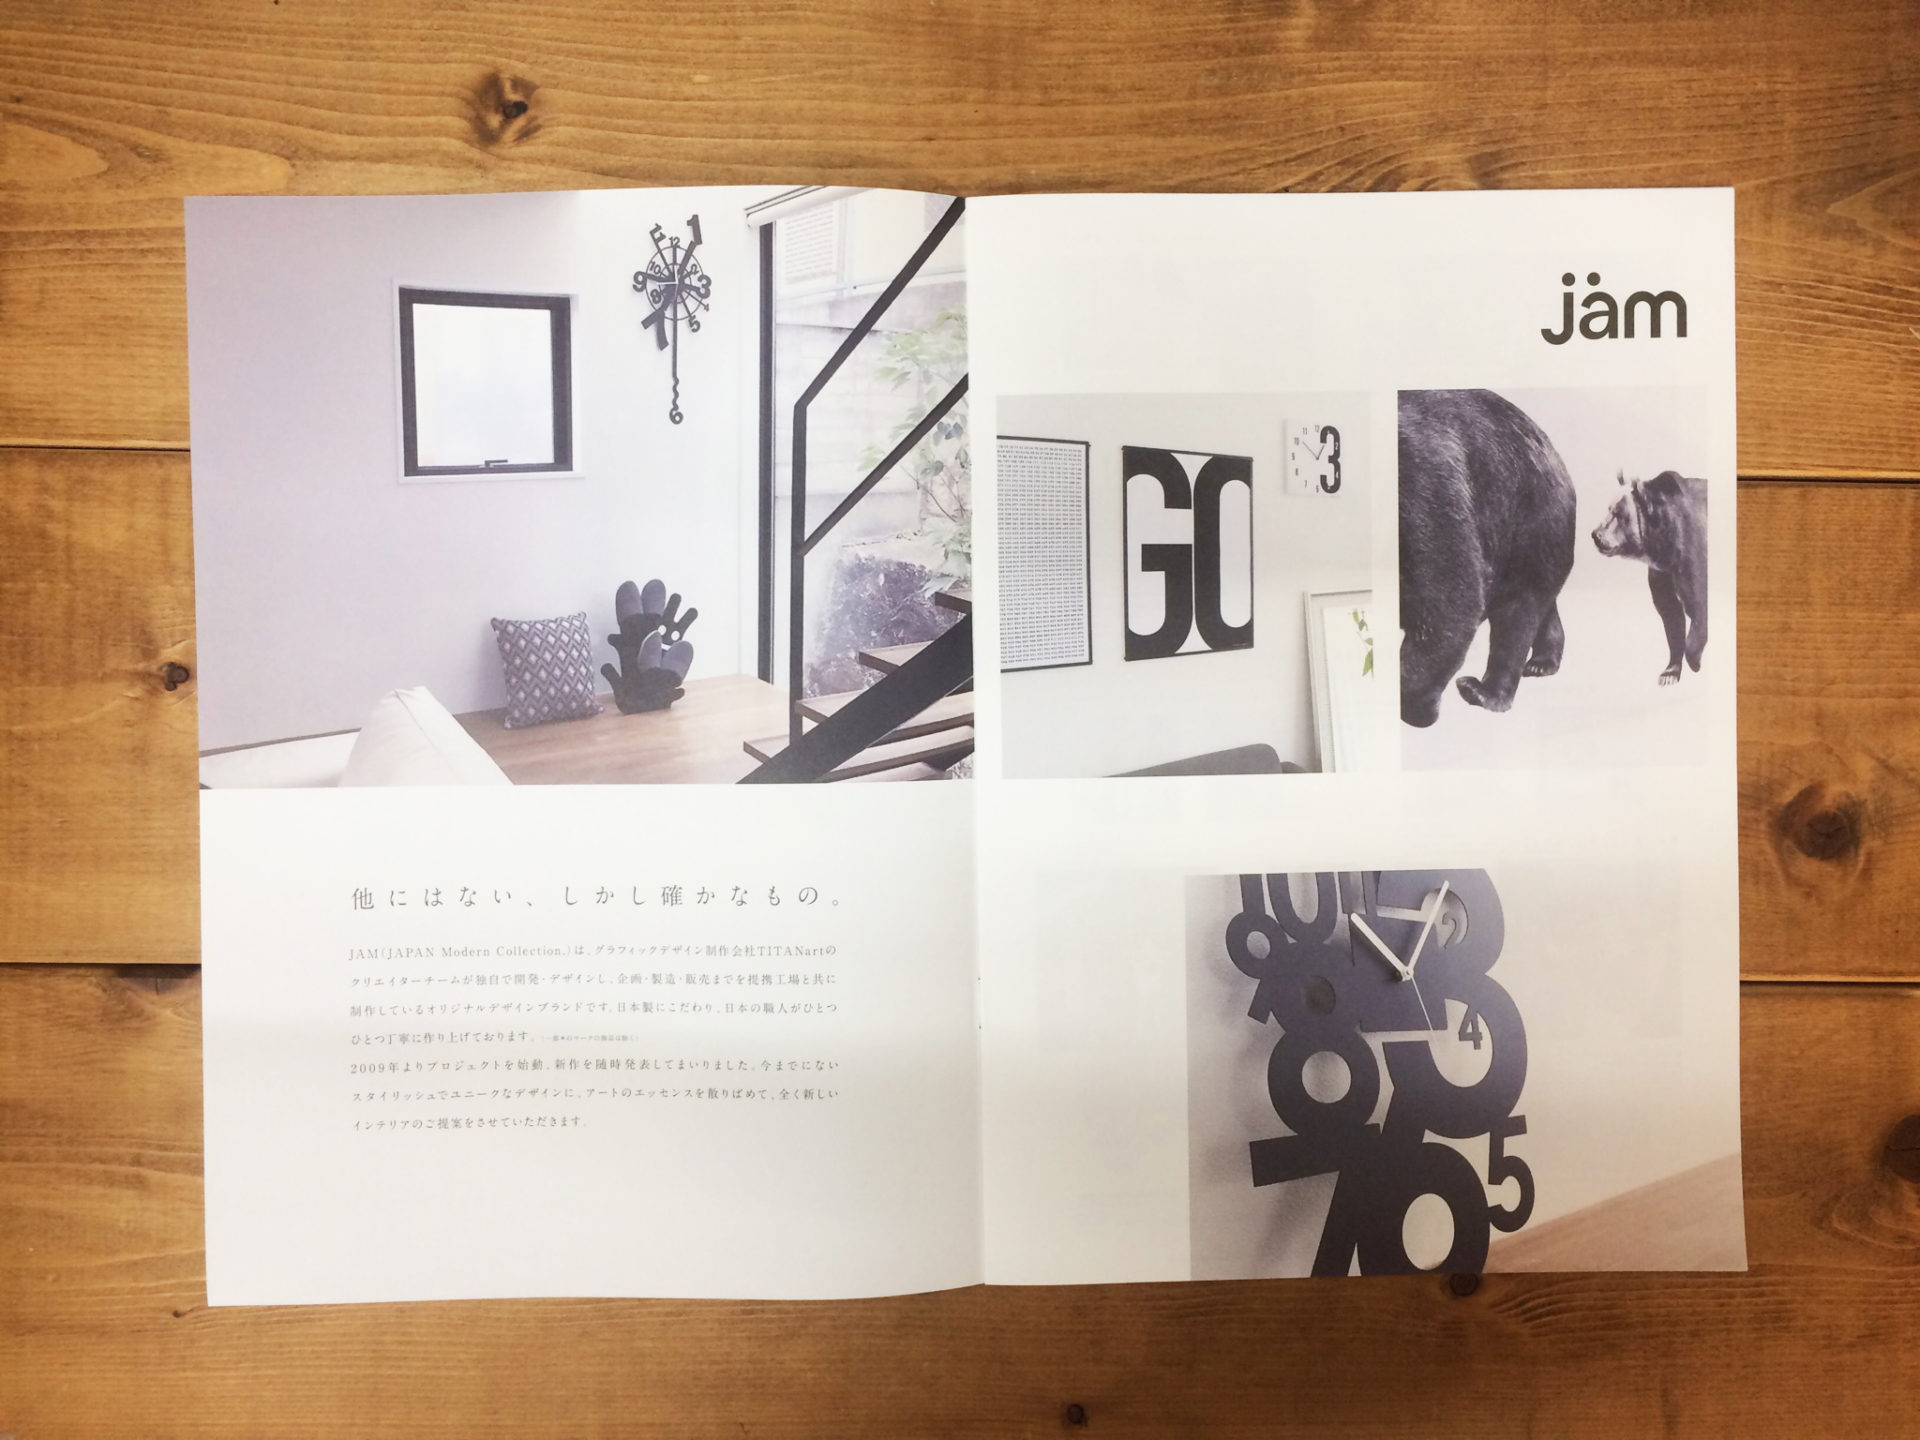 オリジナルインテリアブランド“jam"カタログできましたの画像| 大阪のデザイン会社 タイタン・アート ｜ パンフレット・カタログ制作・ホームページ制作